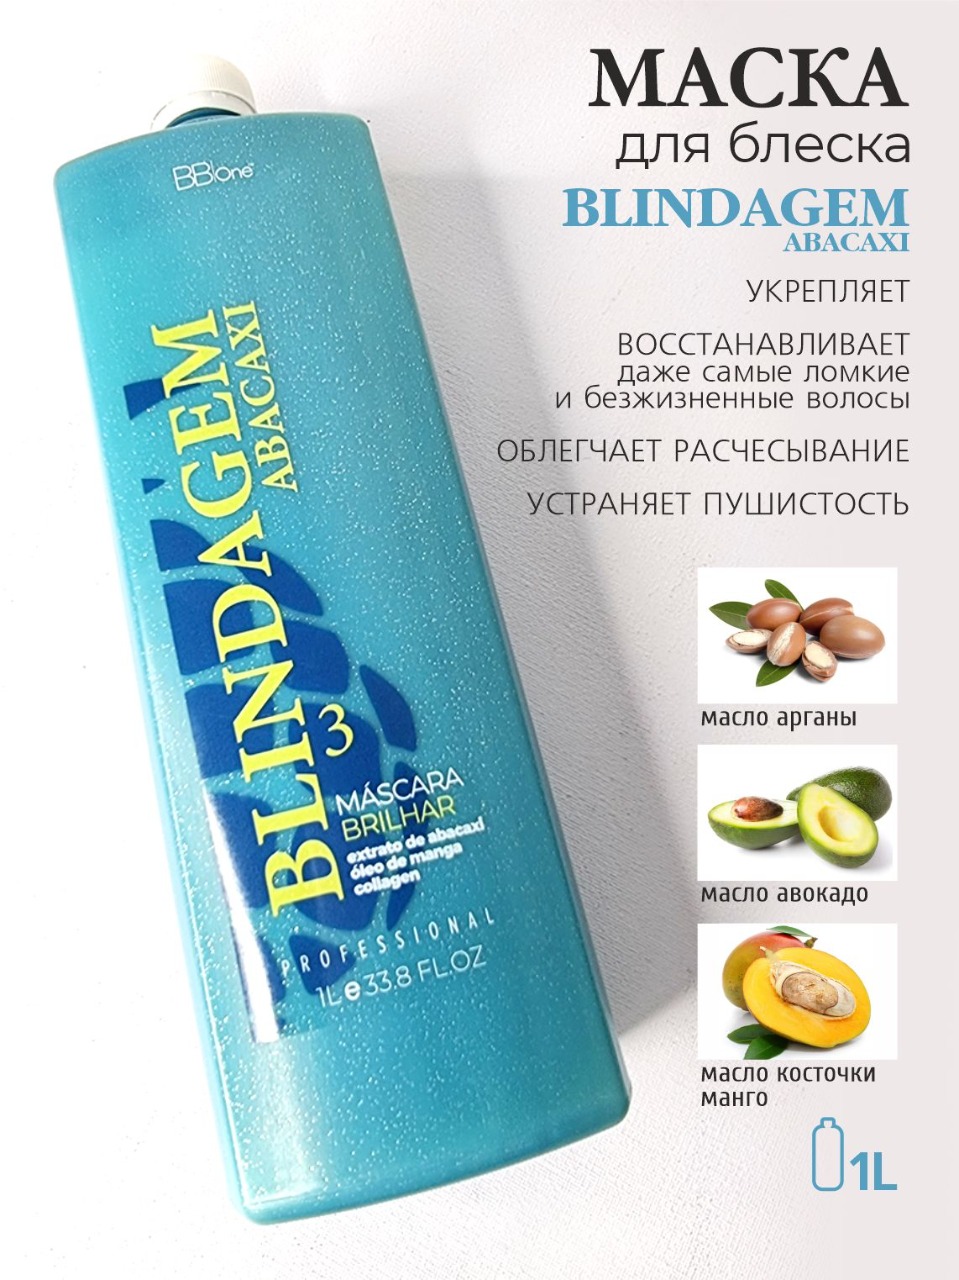 BB one / Протеиново-липидная маска  шаг 3-  нанопластика BLINDAGEM Abacaxi 1000 мл.